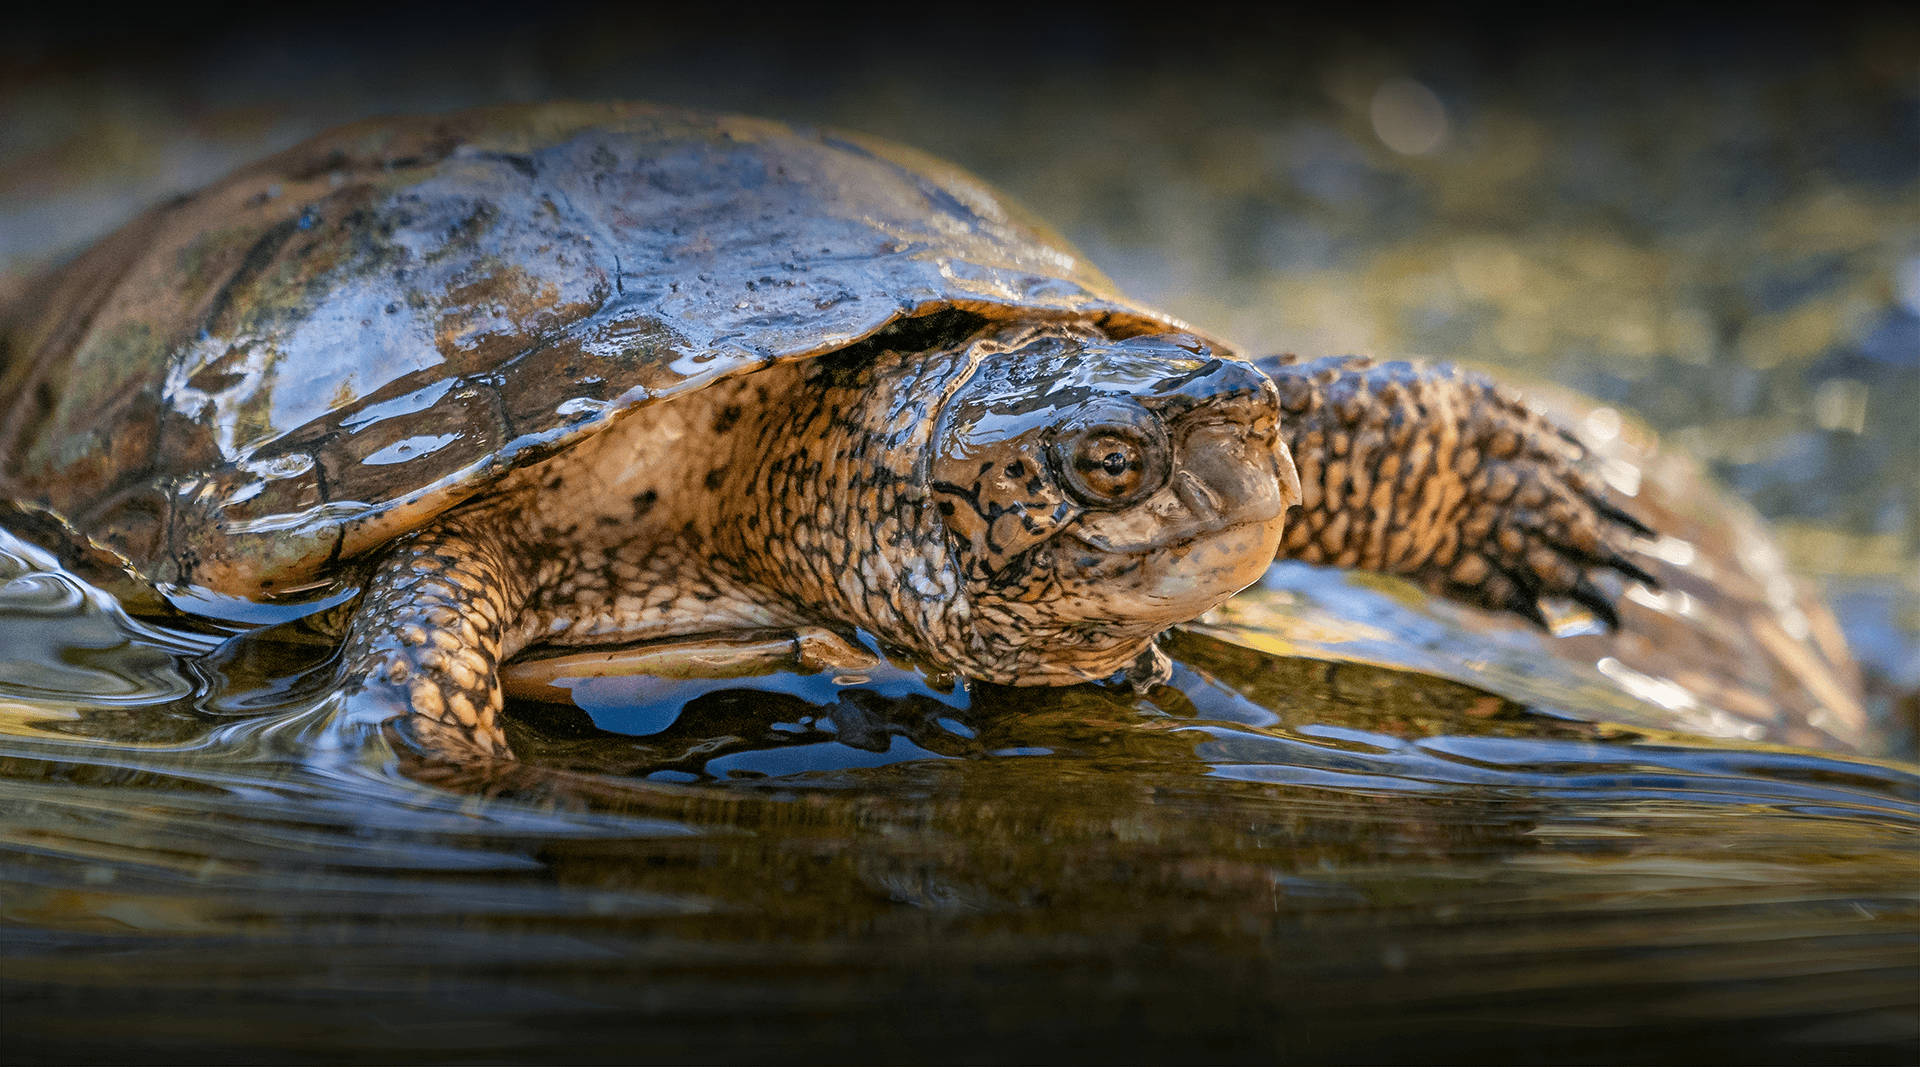 Fotografieder Europäischen Teichwasserschildkröte Wallpaper